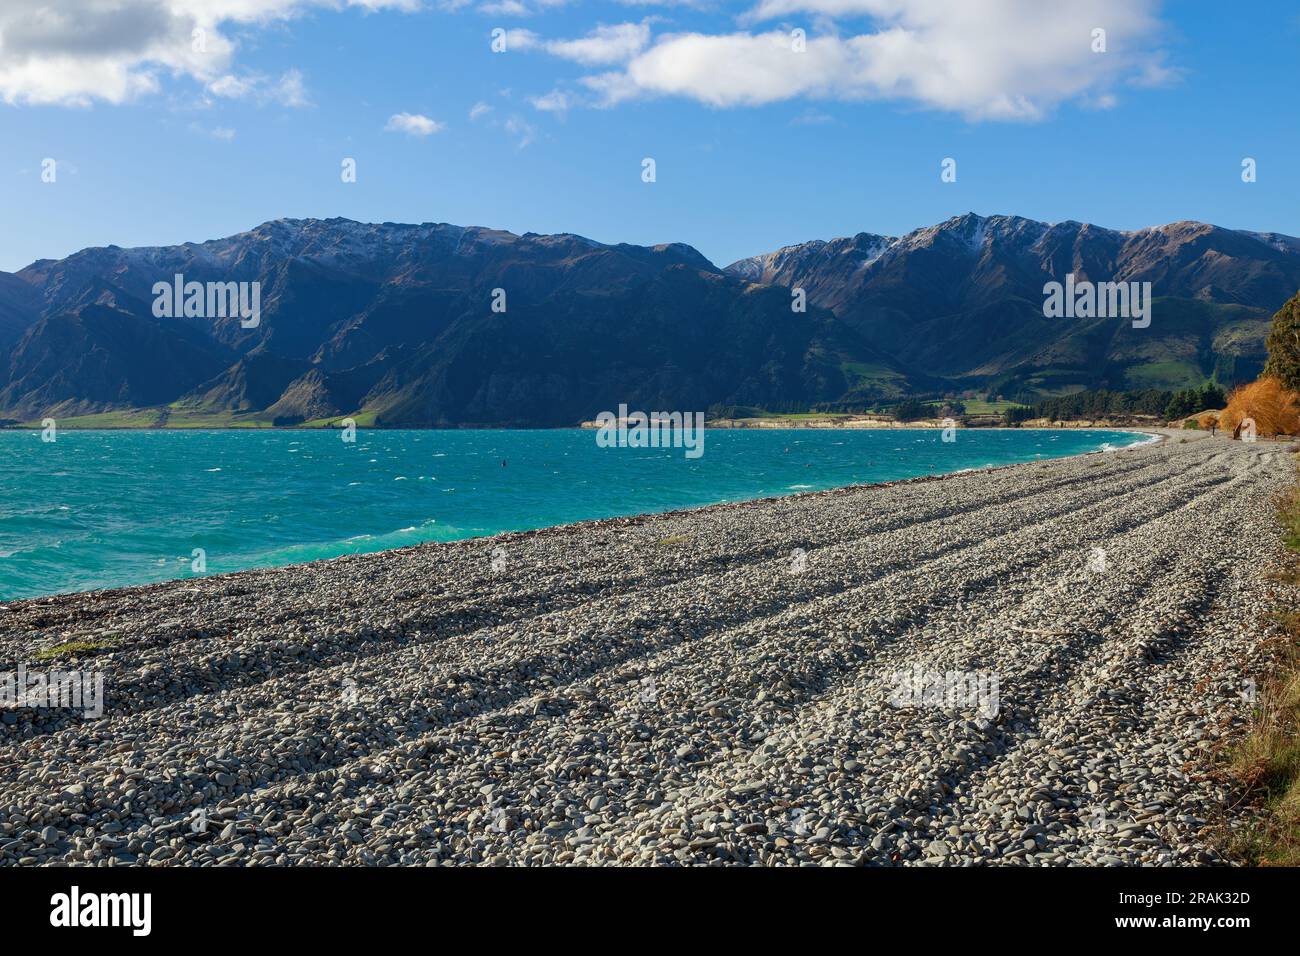 Ein steiniger Strand am Ufer des wunderschönen Lake Hawea auf der Südinsel Neuseelands Stockfoto